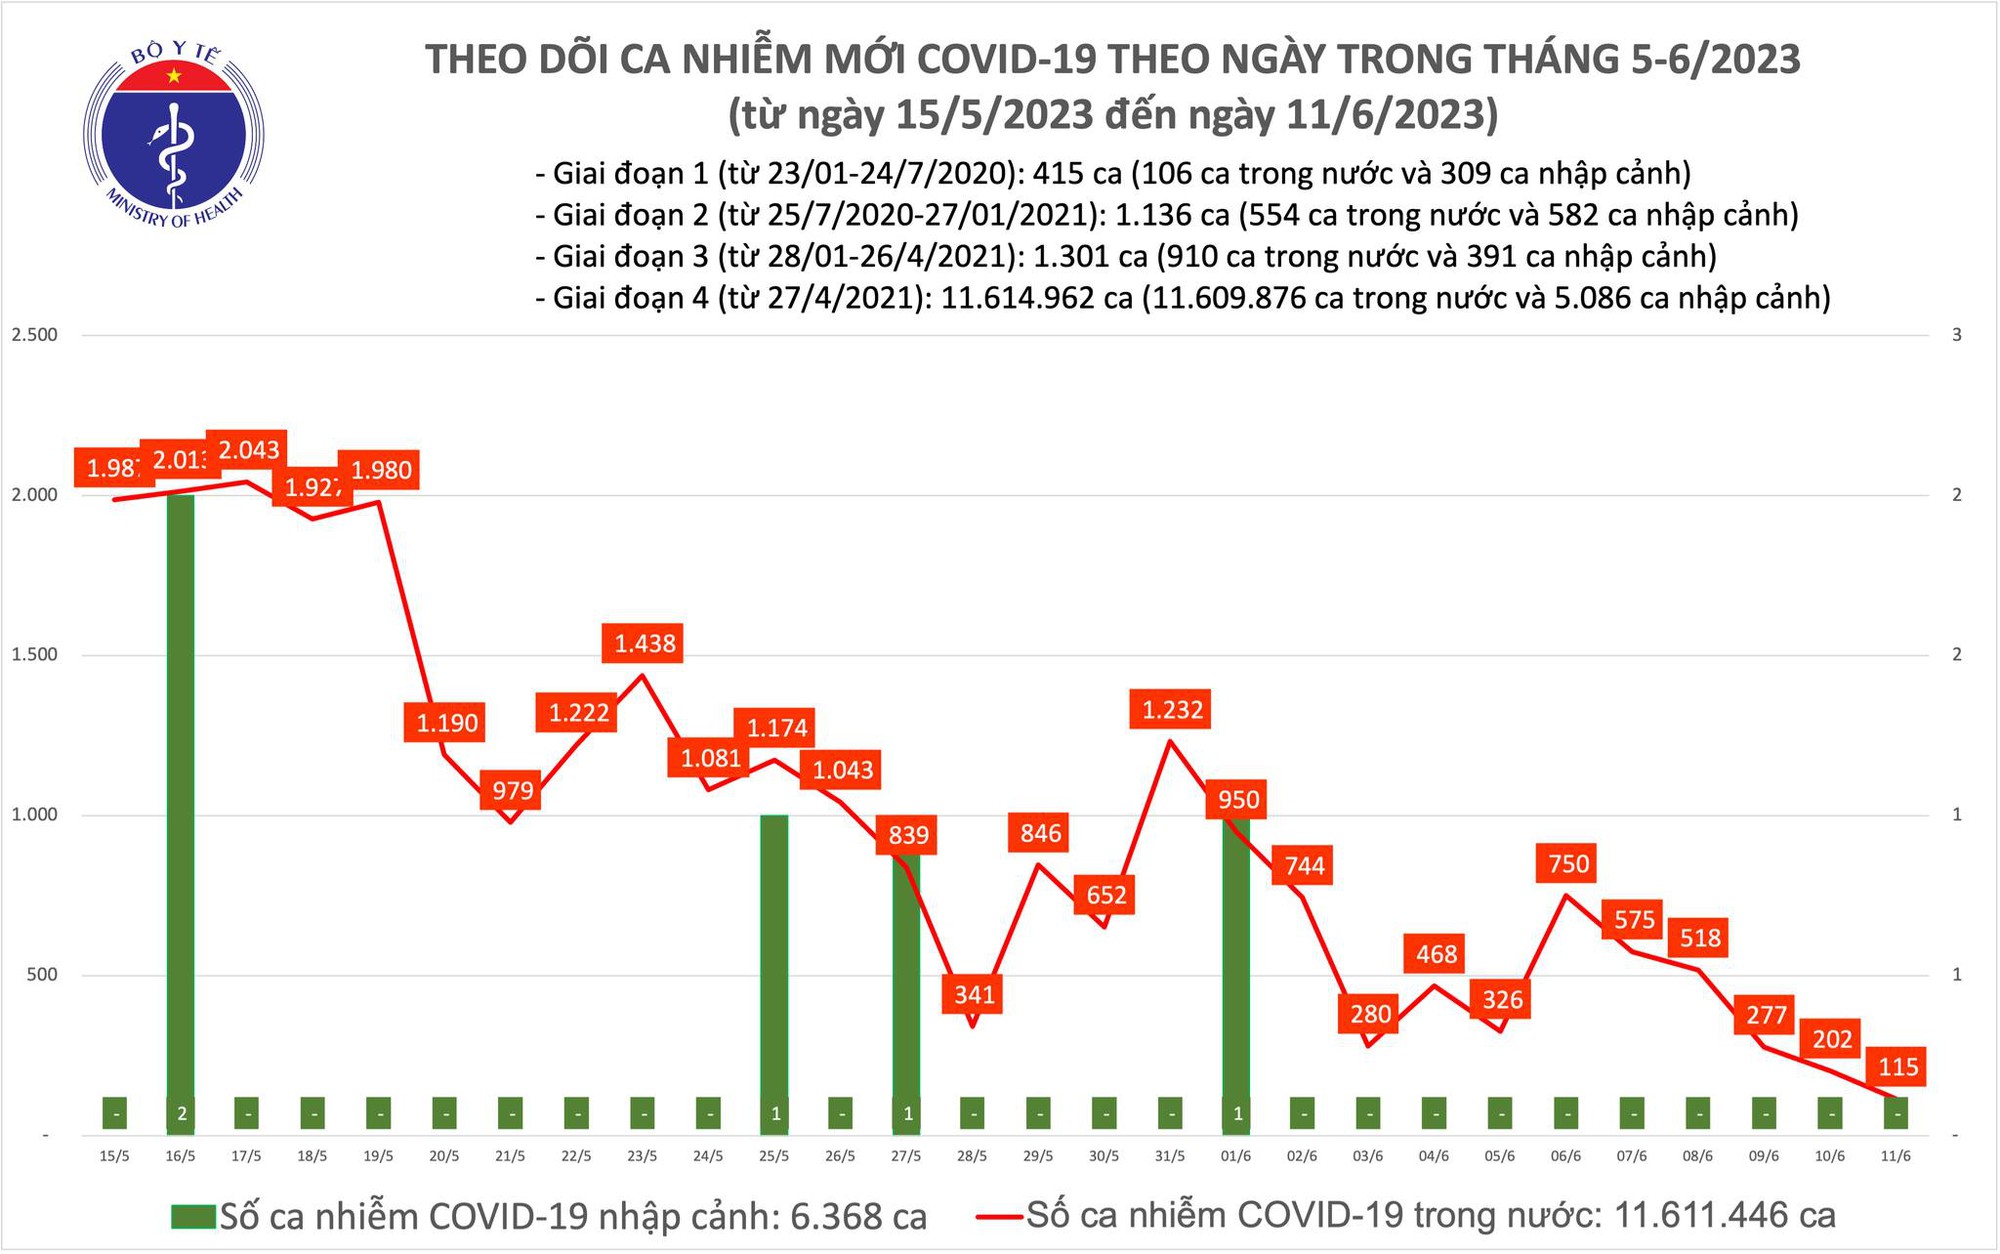 Ca COVID-19 mới ngày 11/6 giảm còn 115 - Ảnh 1.